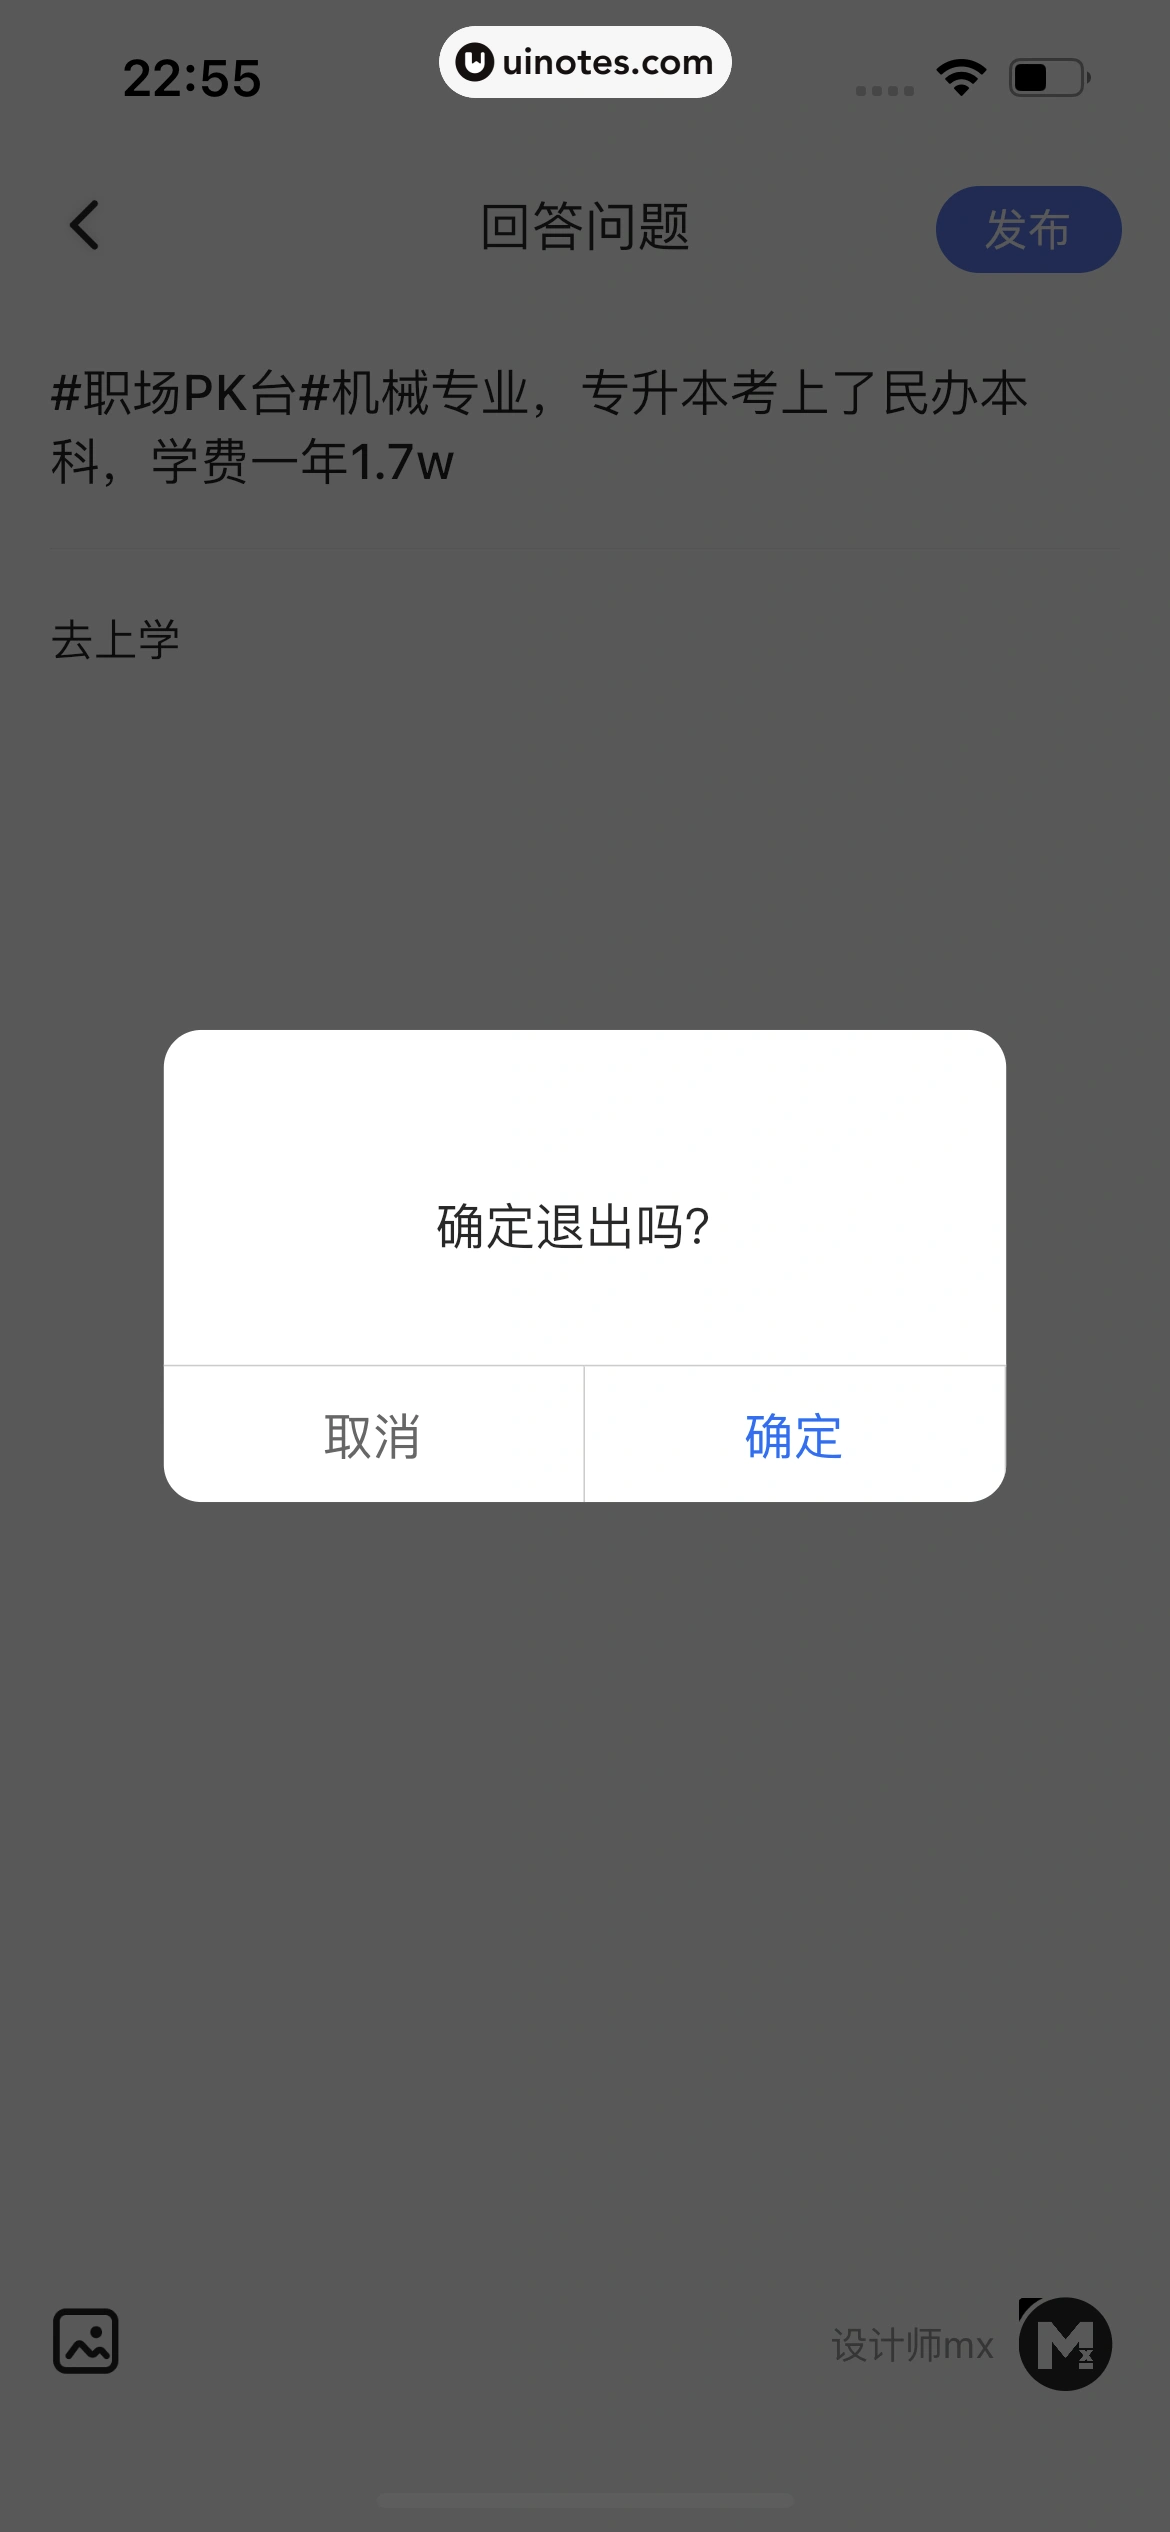 智联招聘 App 截图 360 - UI Notes